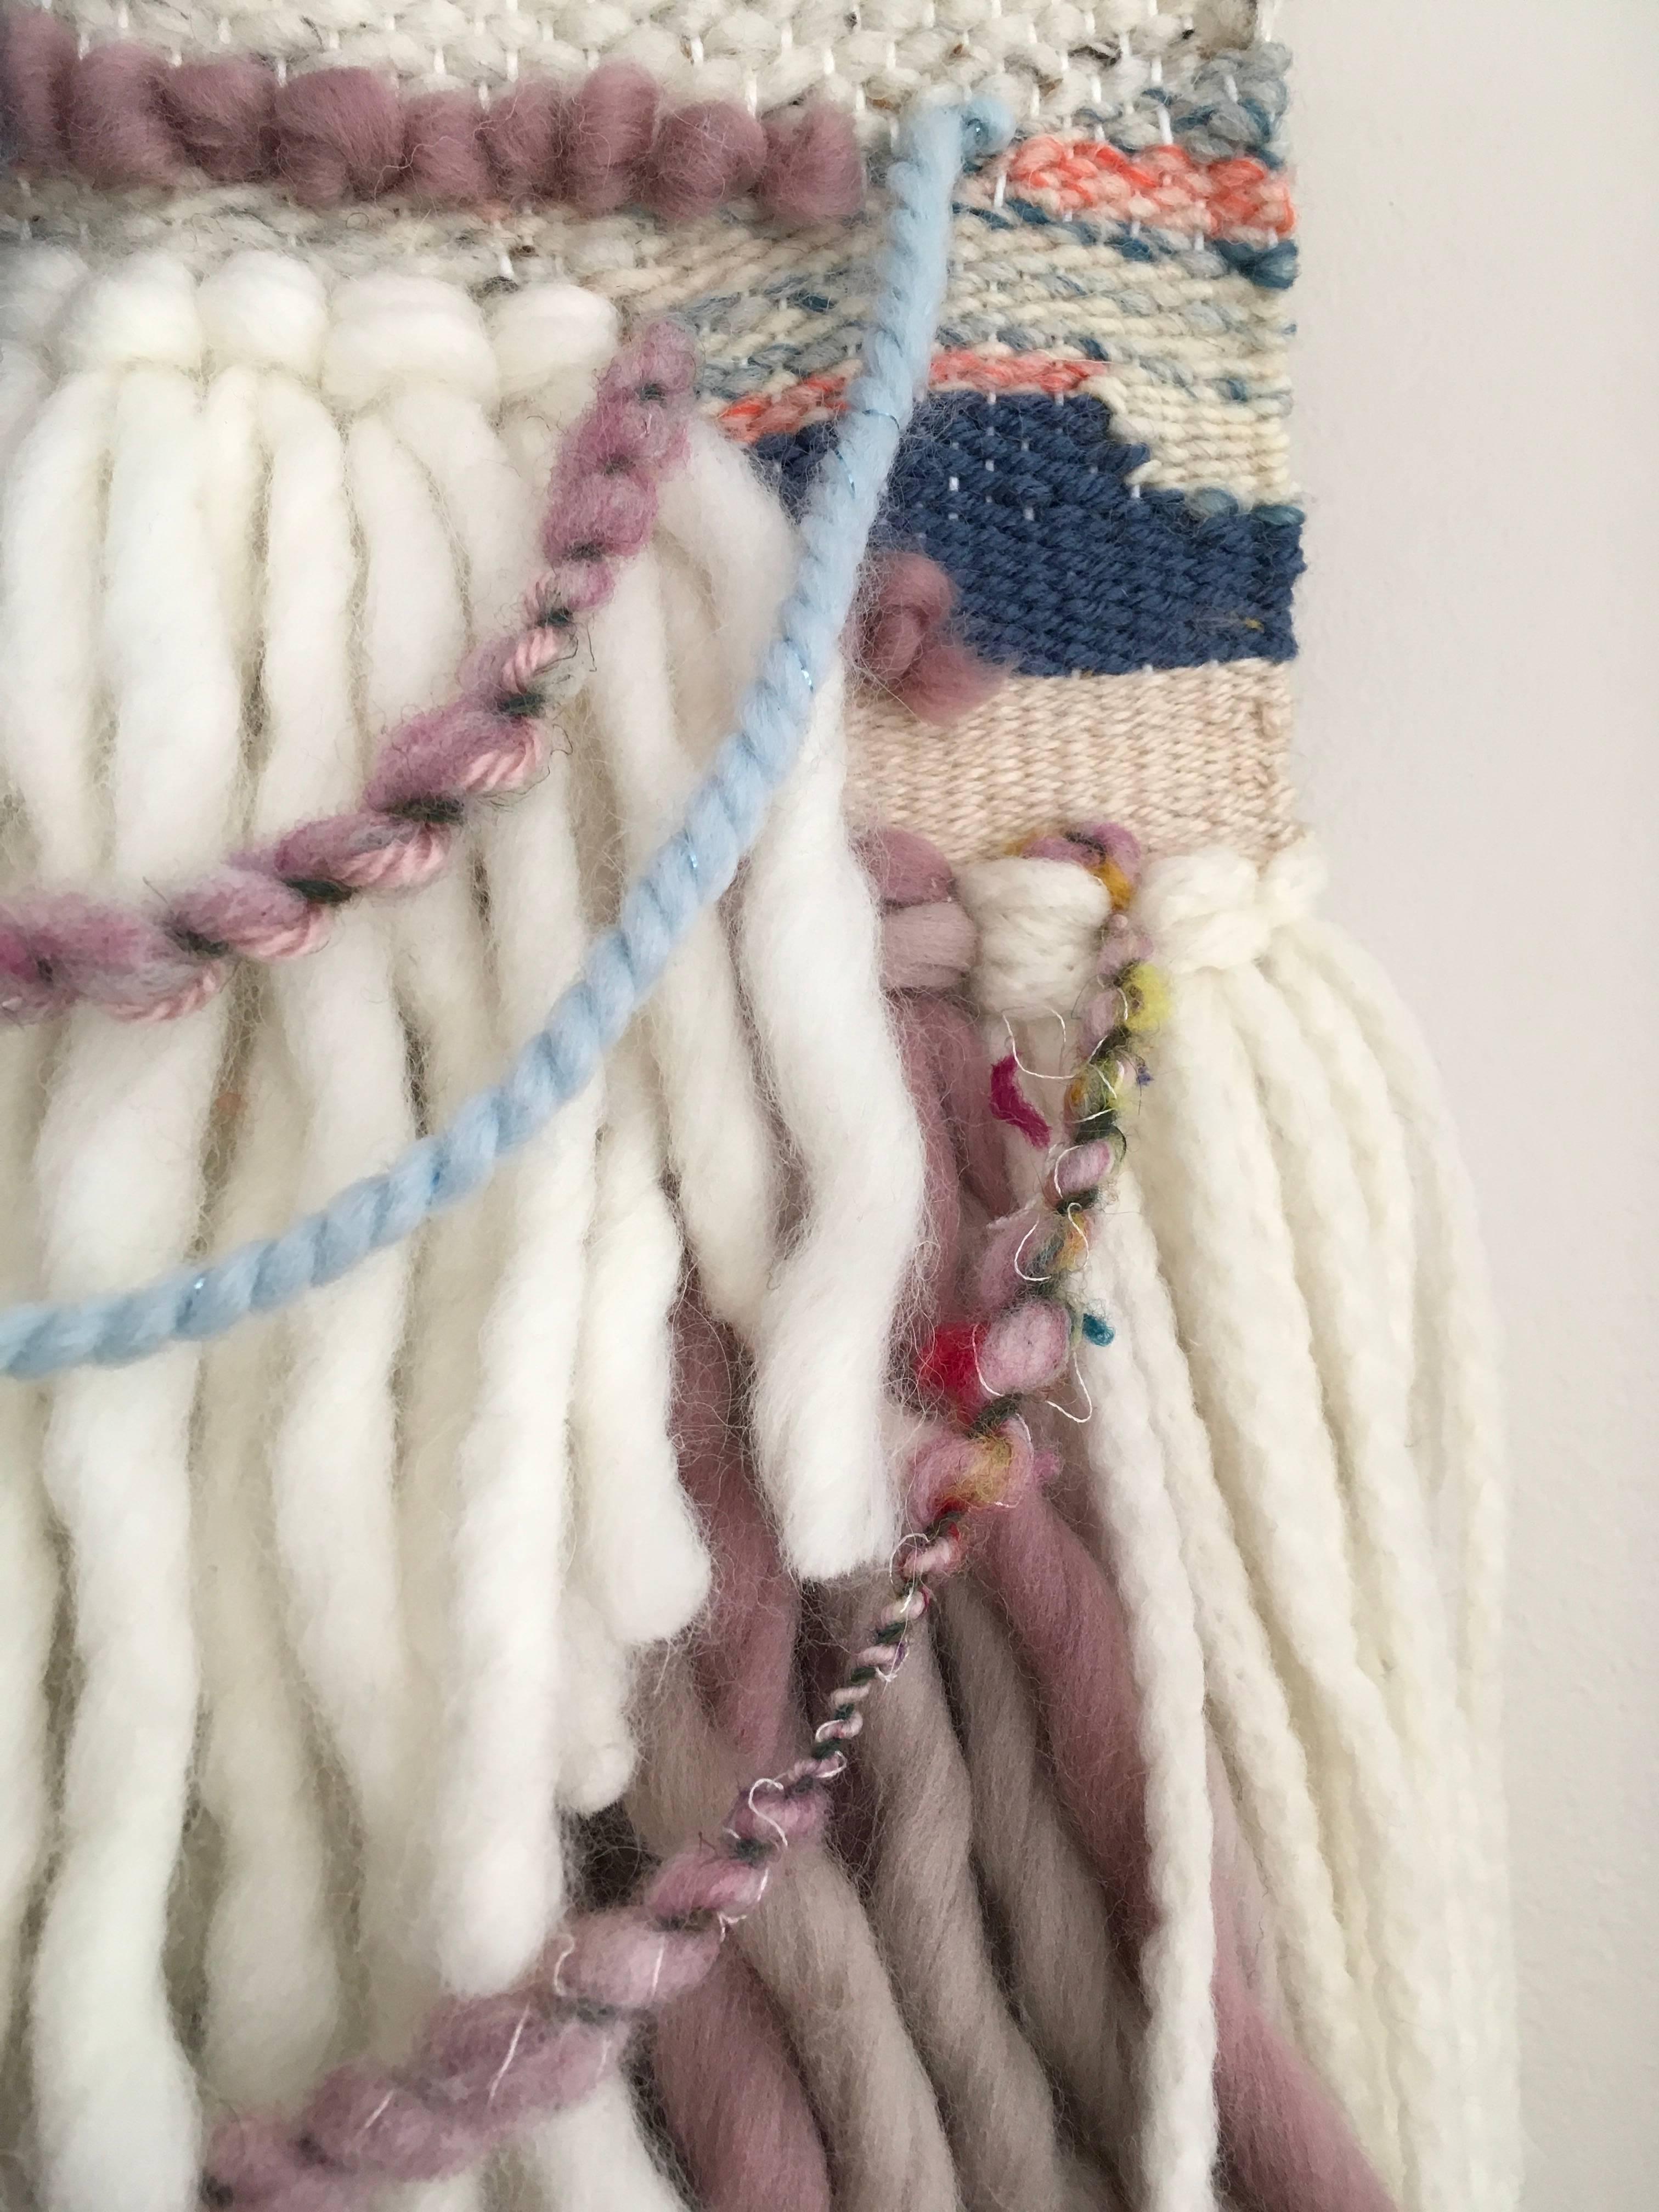 Ce tissage en fibre de Dolores Tema est réalisé avec du coton et de la laine mérinos et alpaga. Le tissage est encadré dans un cadre champagne chaud vieilli, et est tissé du haut vers le bas, avec des couleurs variées de rose sourd, beige, crème, et